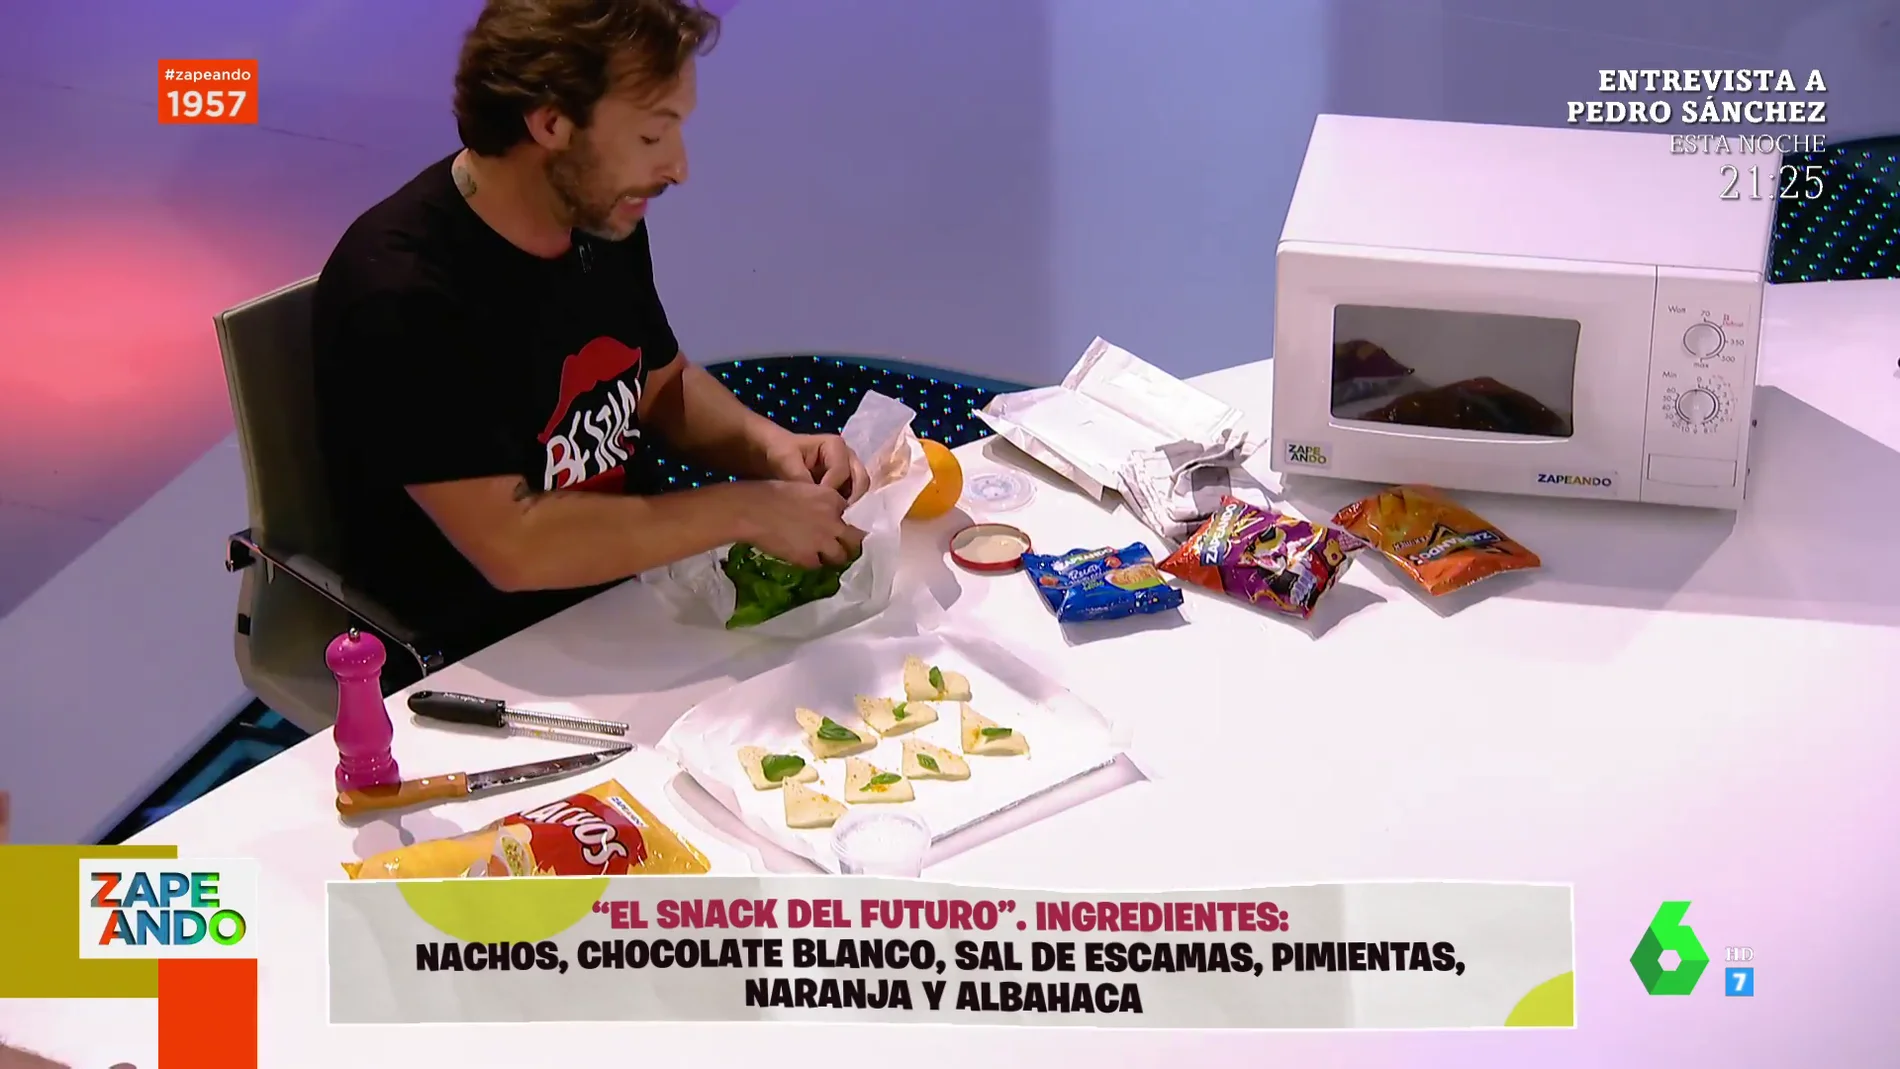 Gipsy Chef crea en directo el snack del futuro con nachos, chocolate blanco, sal y naranja: "Esta mezcla es dios"